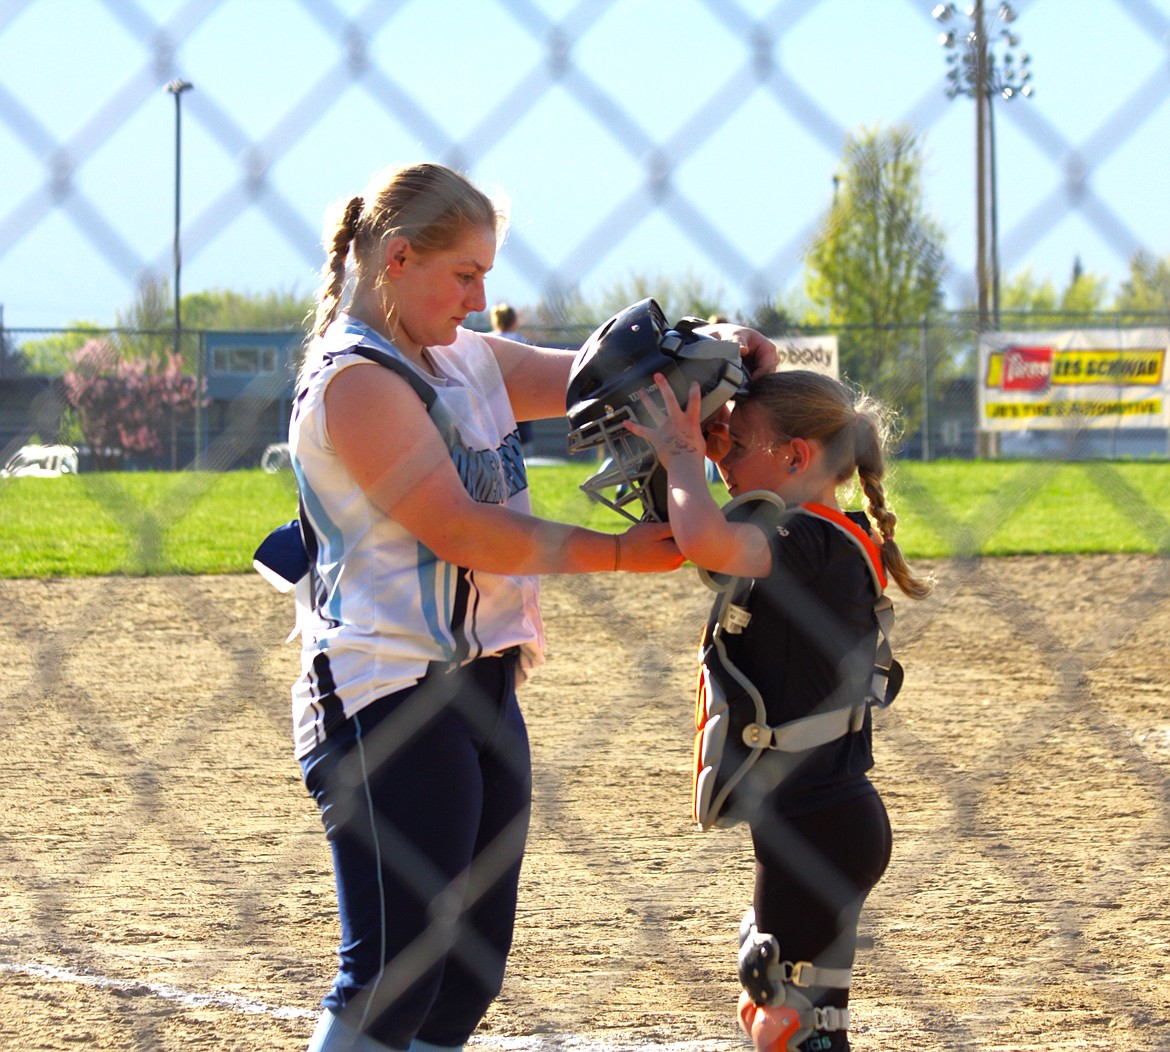 (left) Savannah Rickter, catcher for Badger softball, helps little league player with catchers gear.